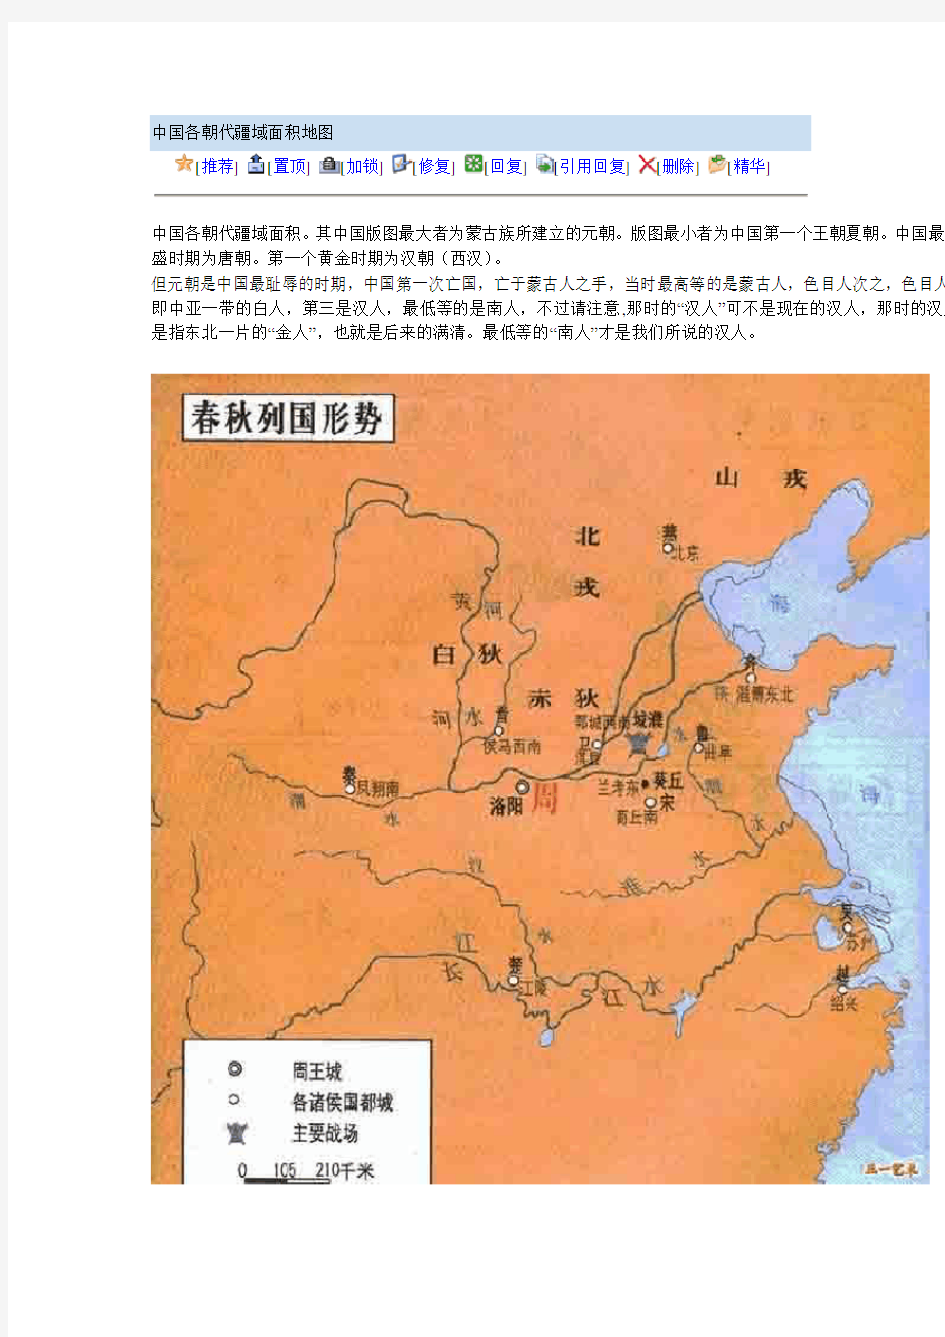 中国各朝代疆域面积地图(图)